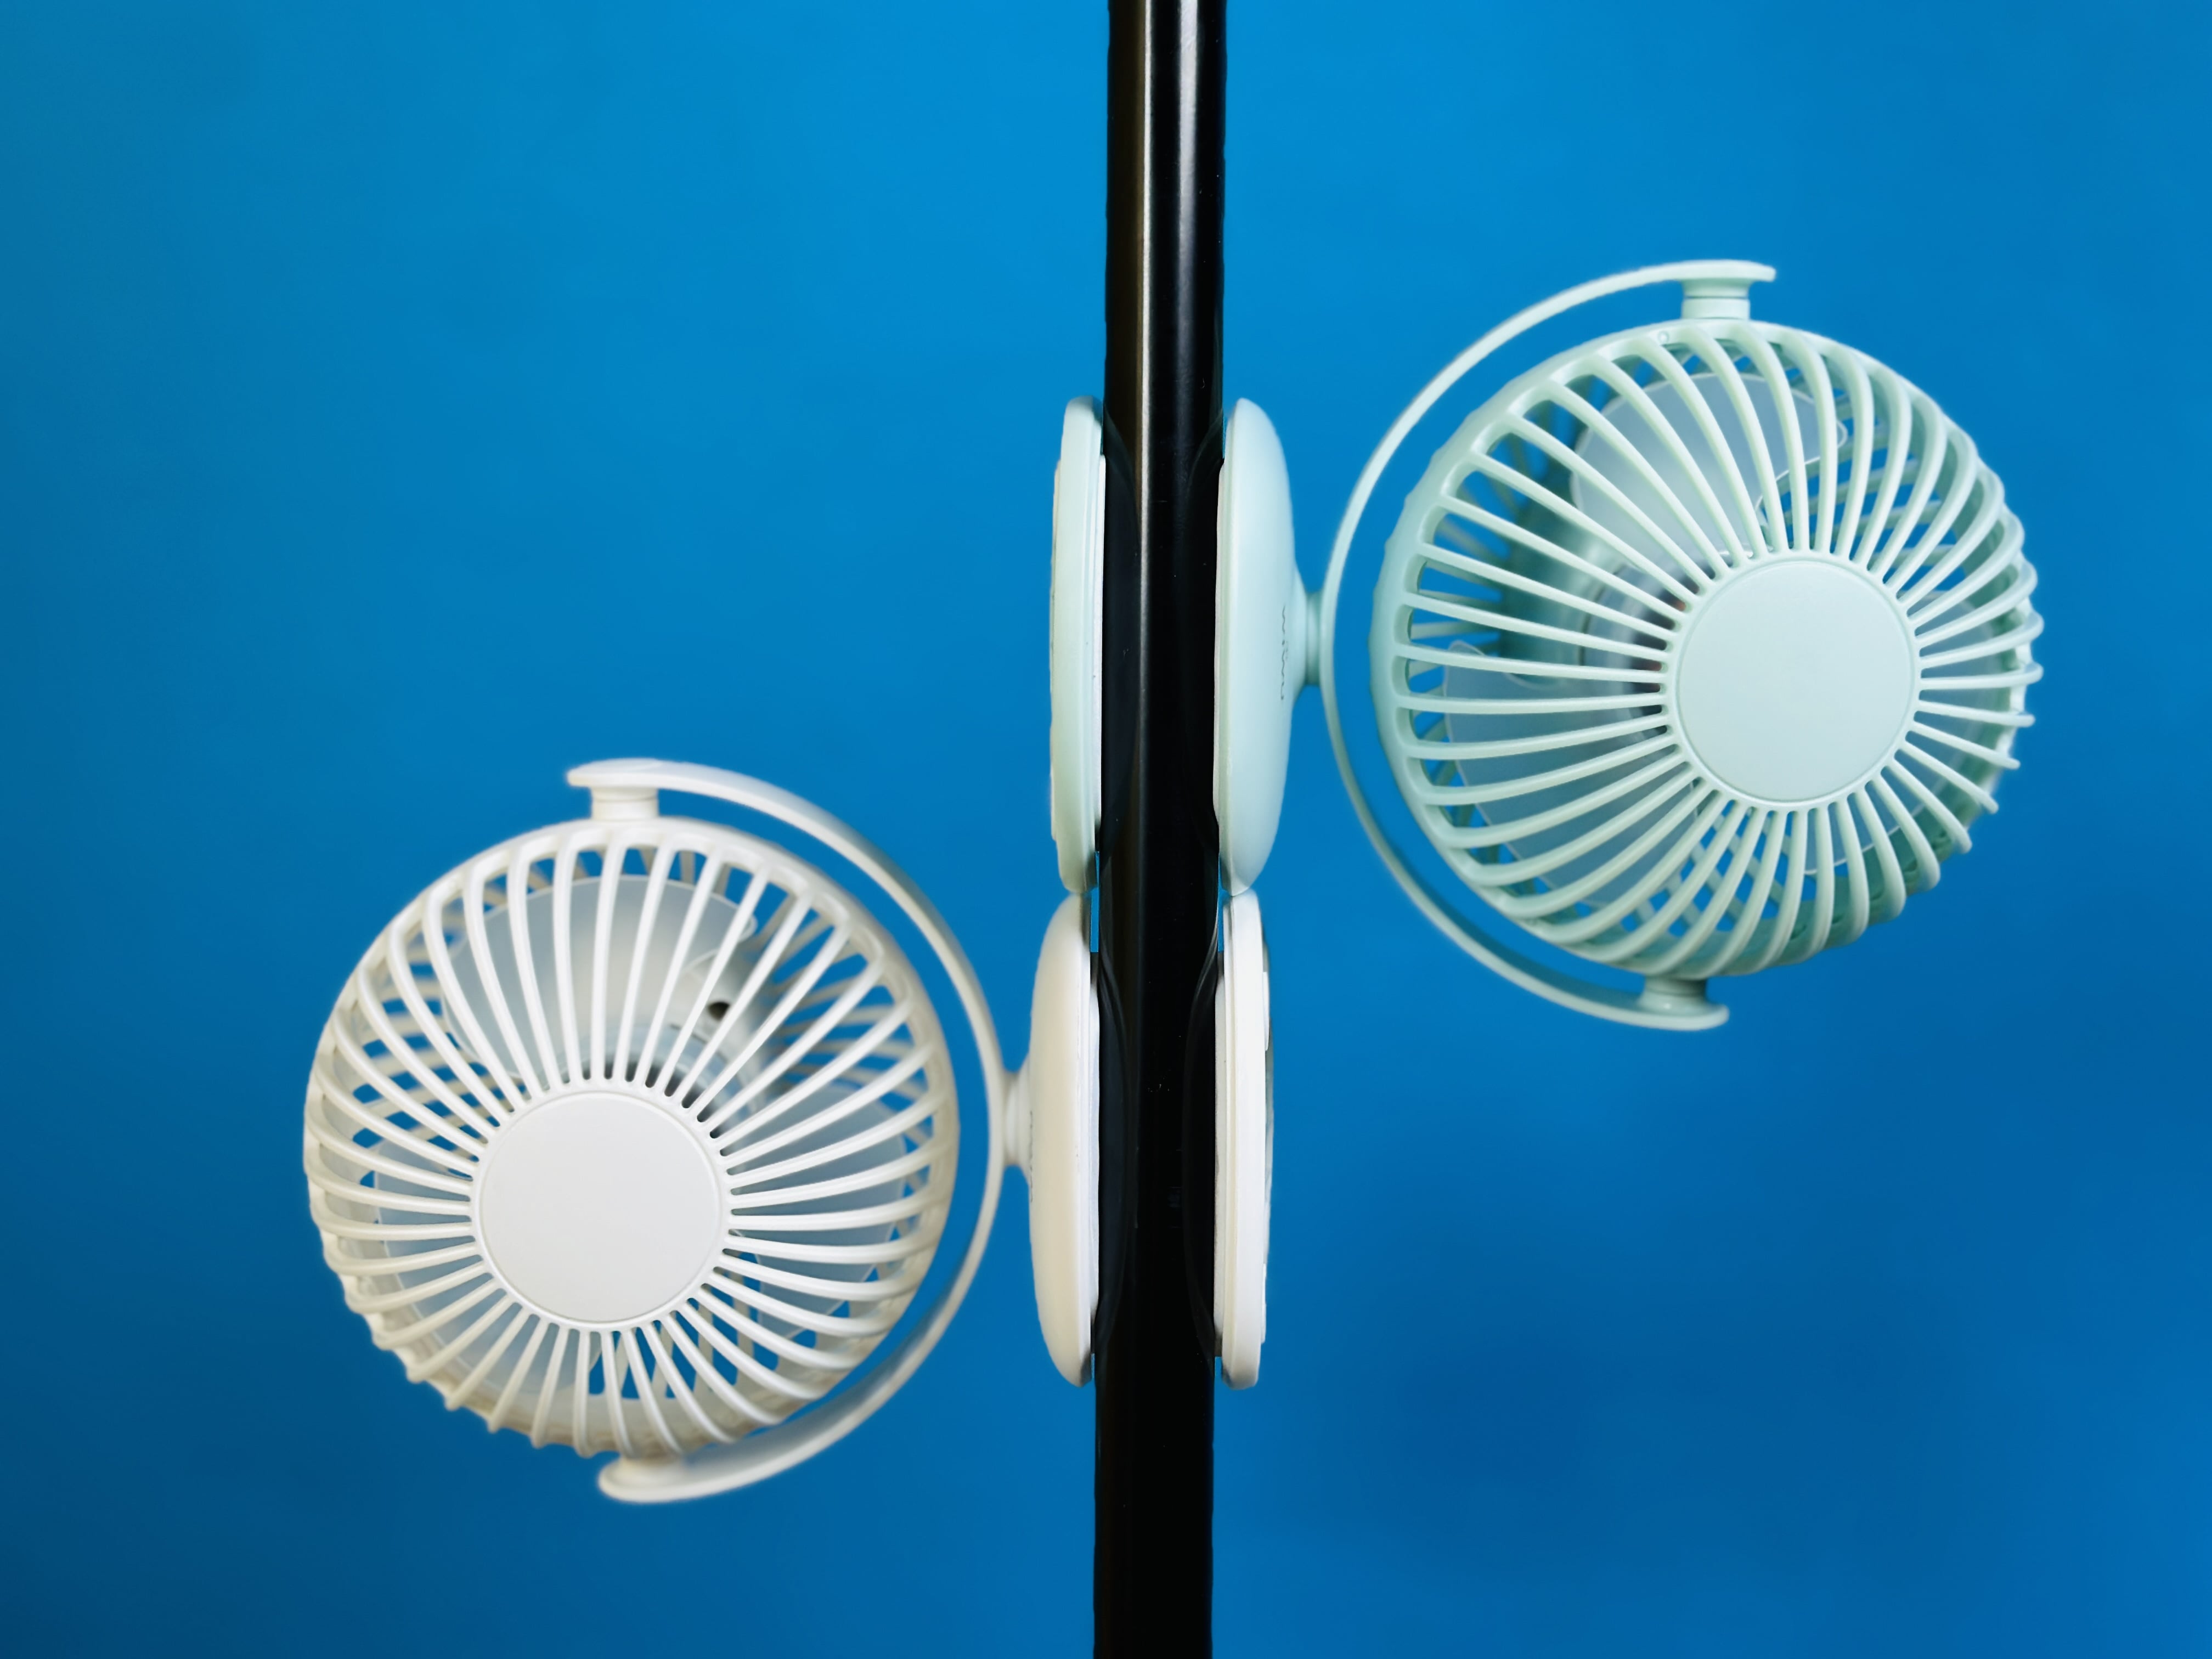 NEW!! Mini Clip Fan 360 Degree Rotation Rechargeable Fan (WiWu FS03)- Light Green Color